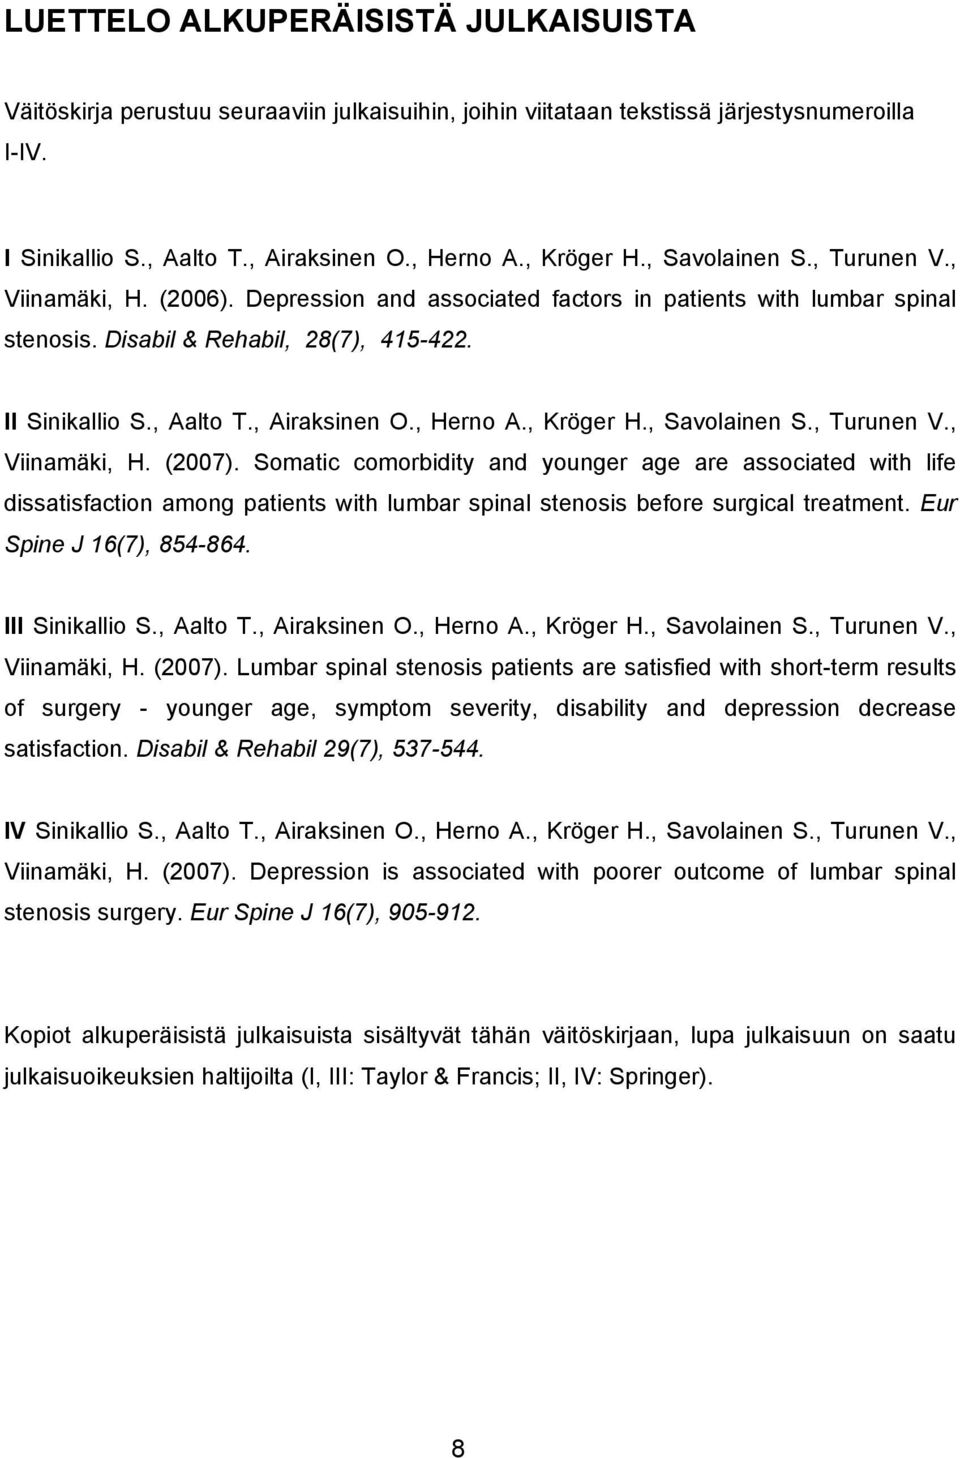 , Airaksinen O., Herno A., Kröger H., Savolainen S., Turunen V., Viinamäki, H. (2007).